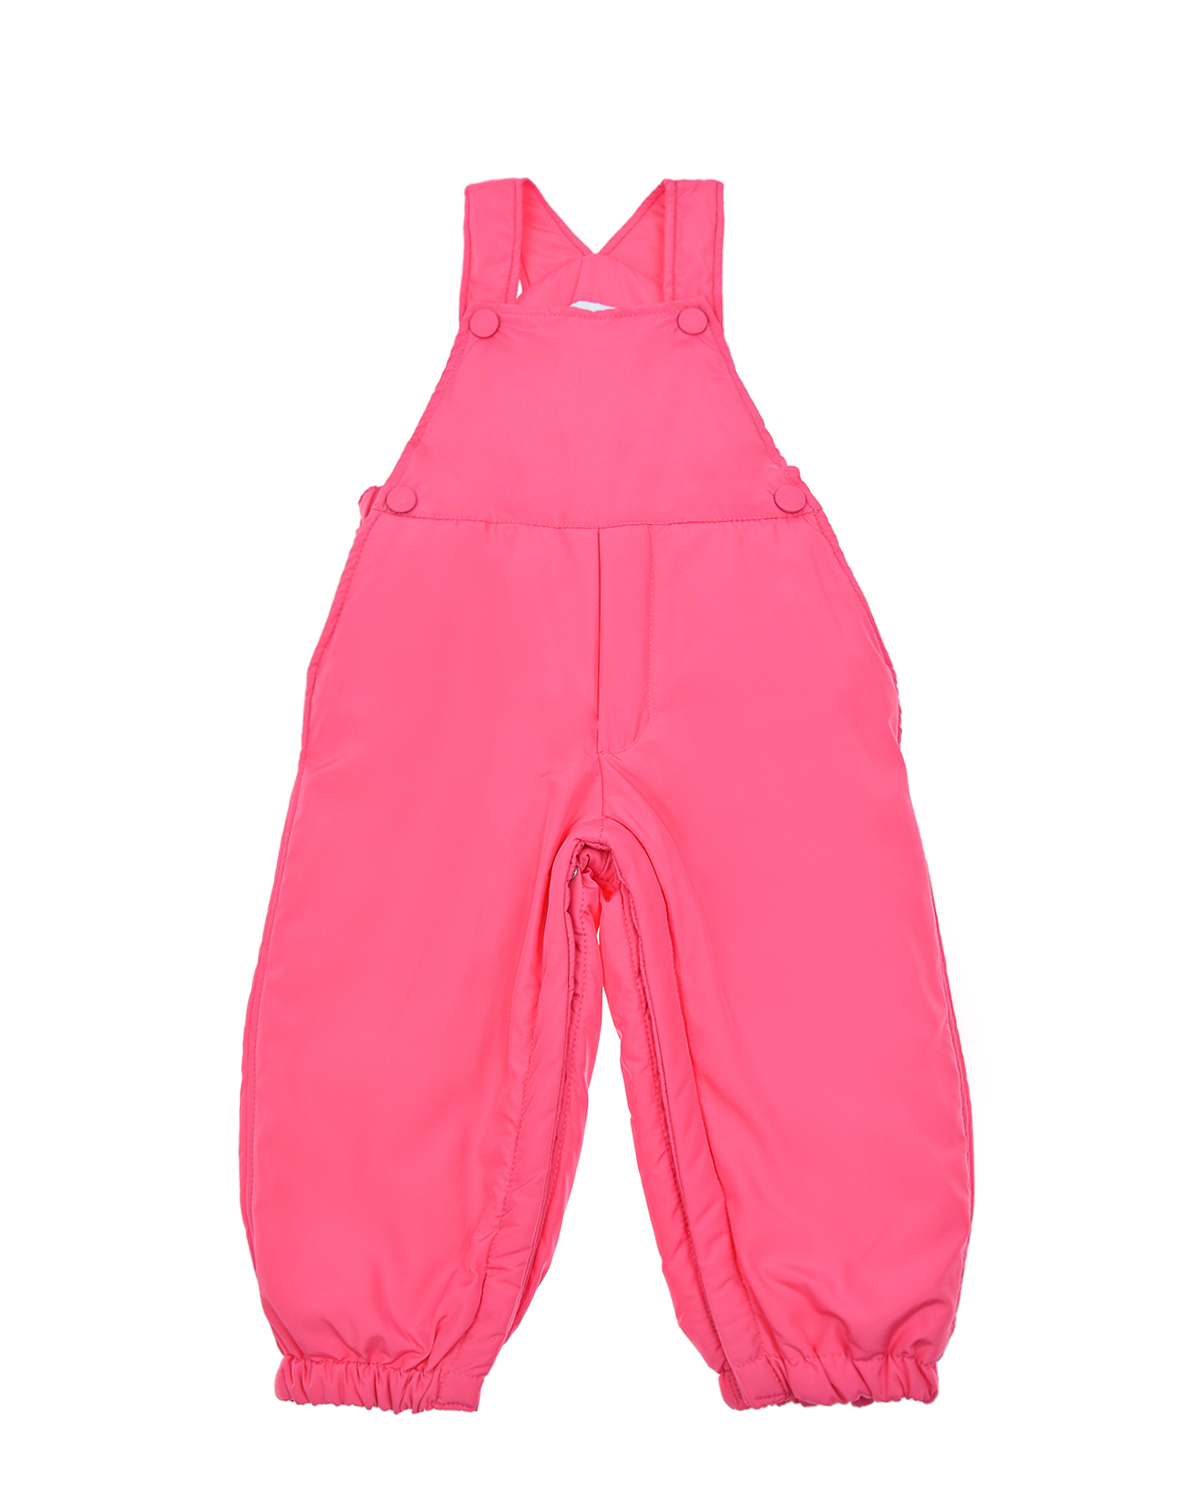 Розовый полукомбинезон на пуговицах Aletta детский, размер 92, цвет нет цвета - фото 1